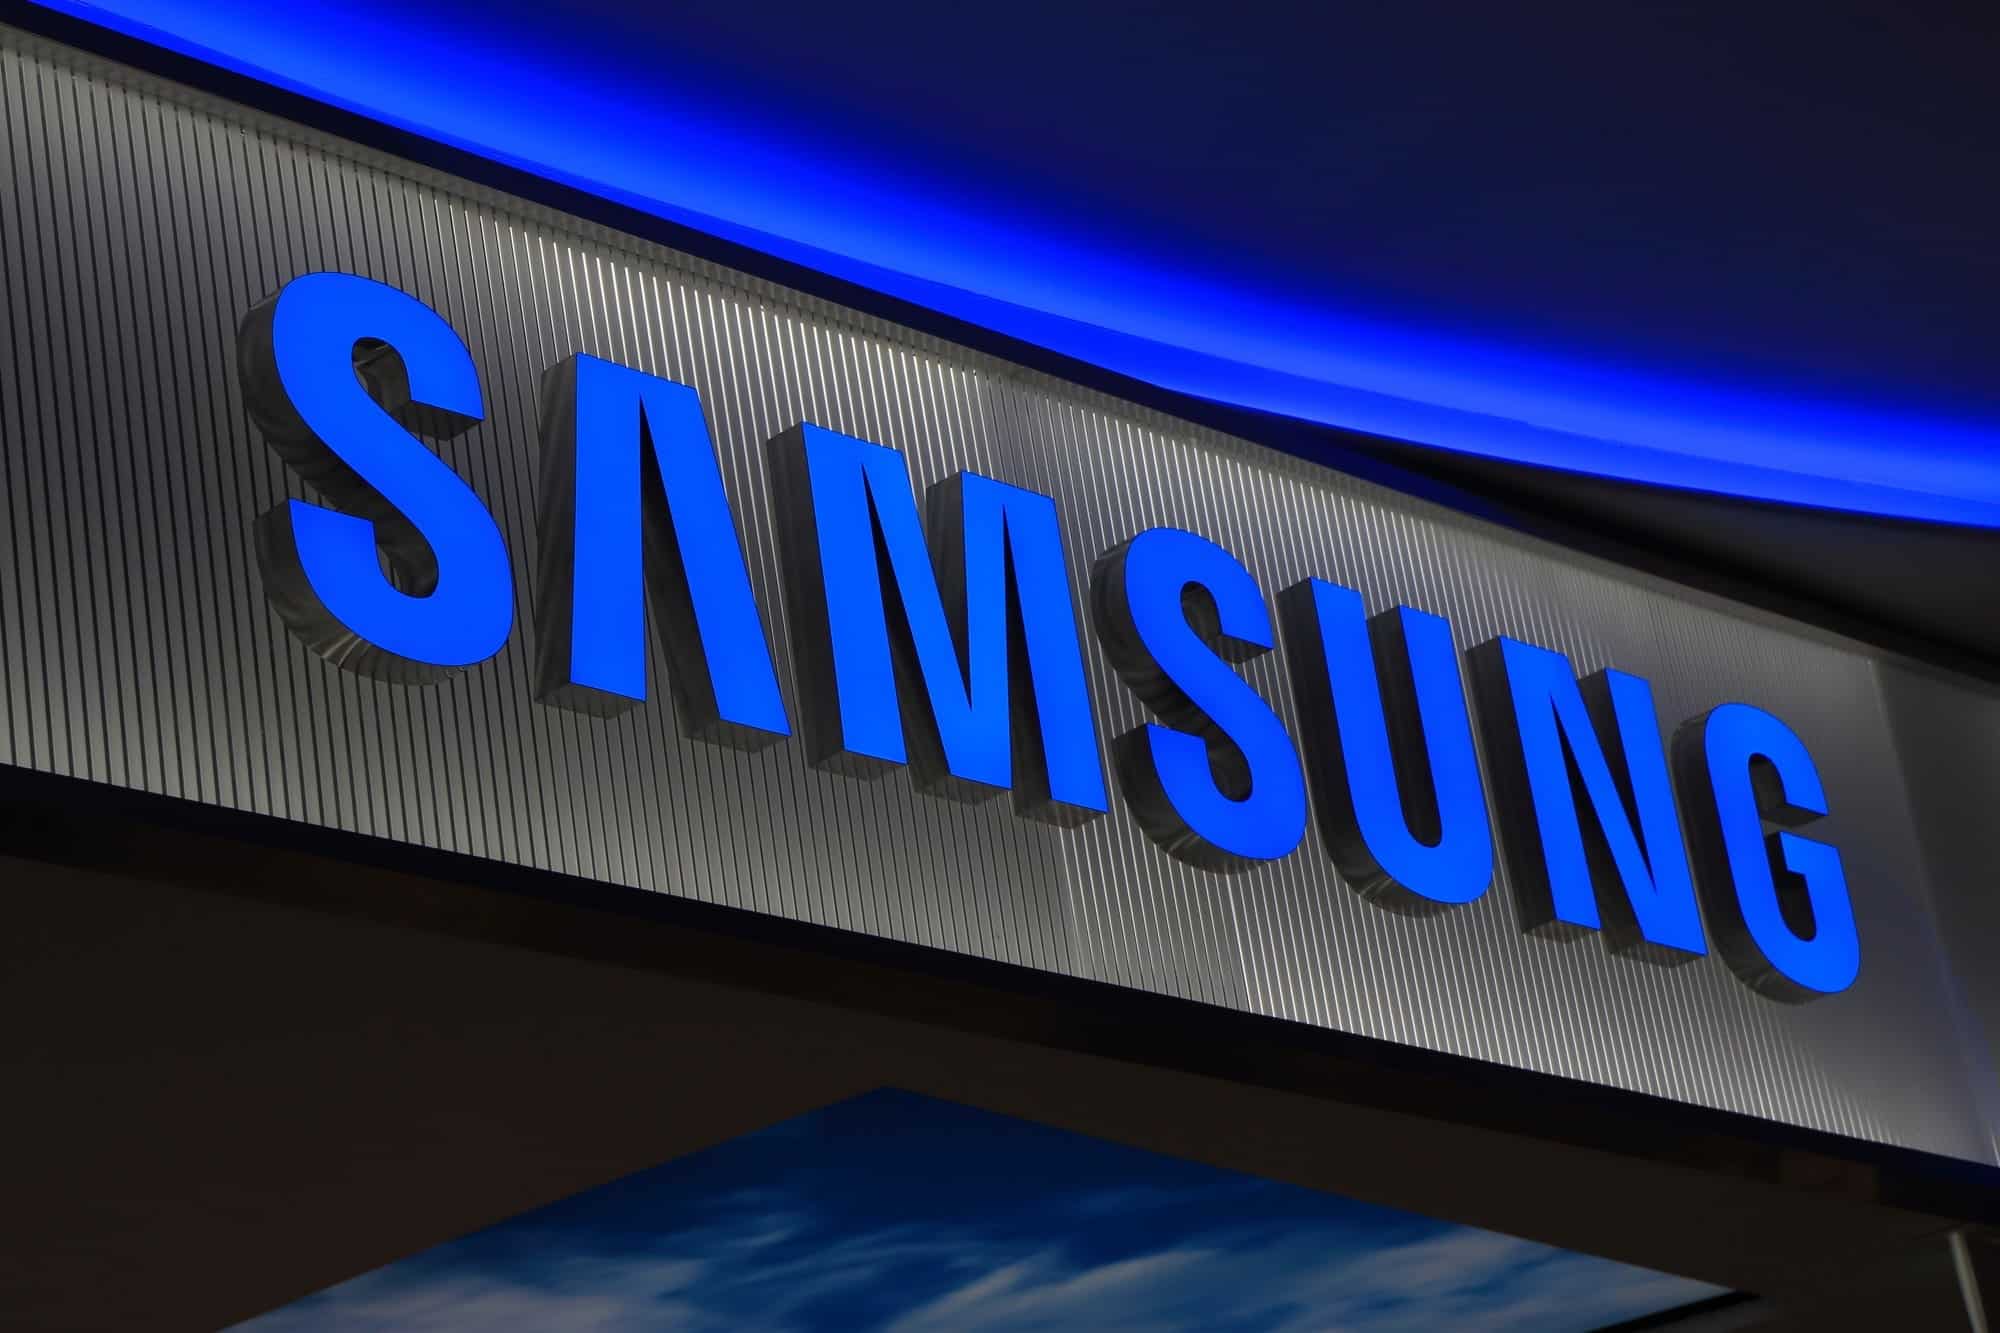 Samsung riduce la produzione di smartphone: le vendite sono inferiori alle attese thumbnail